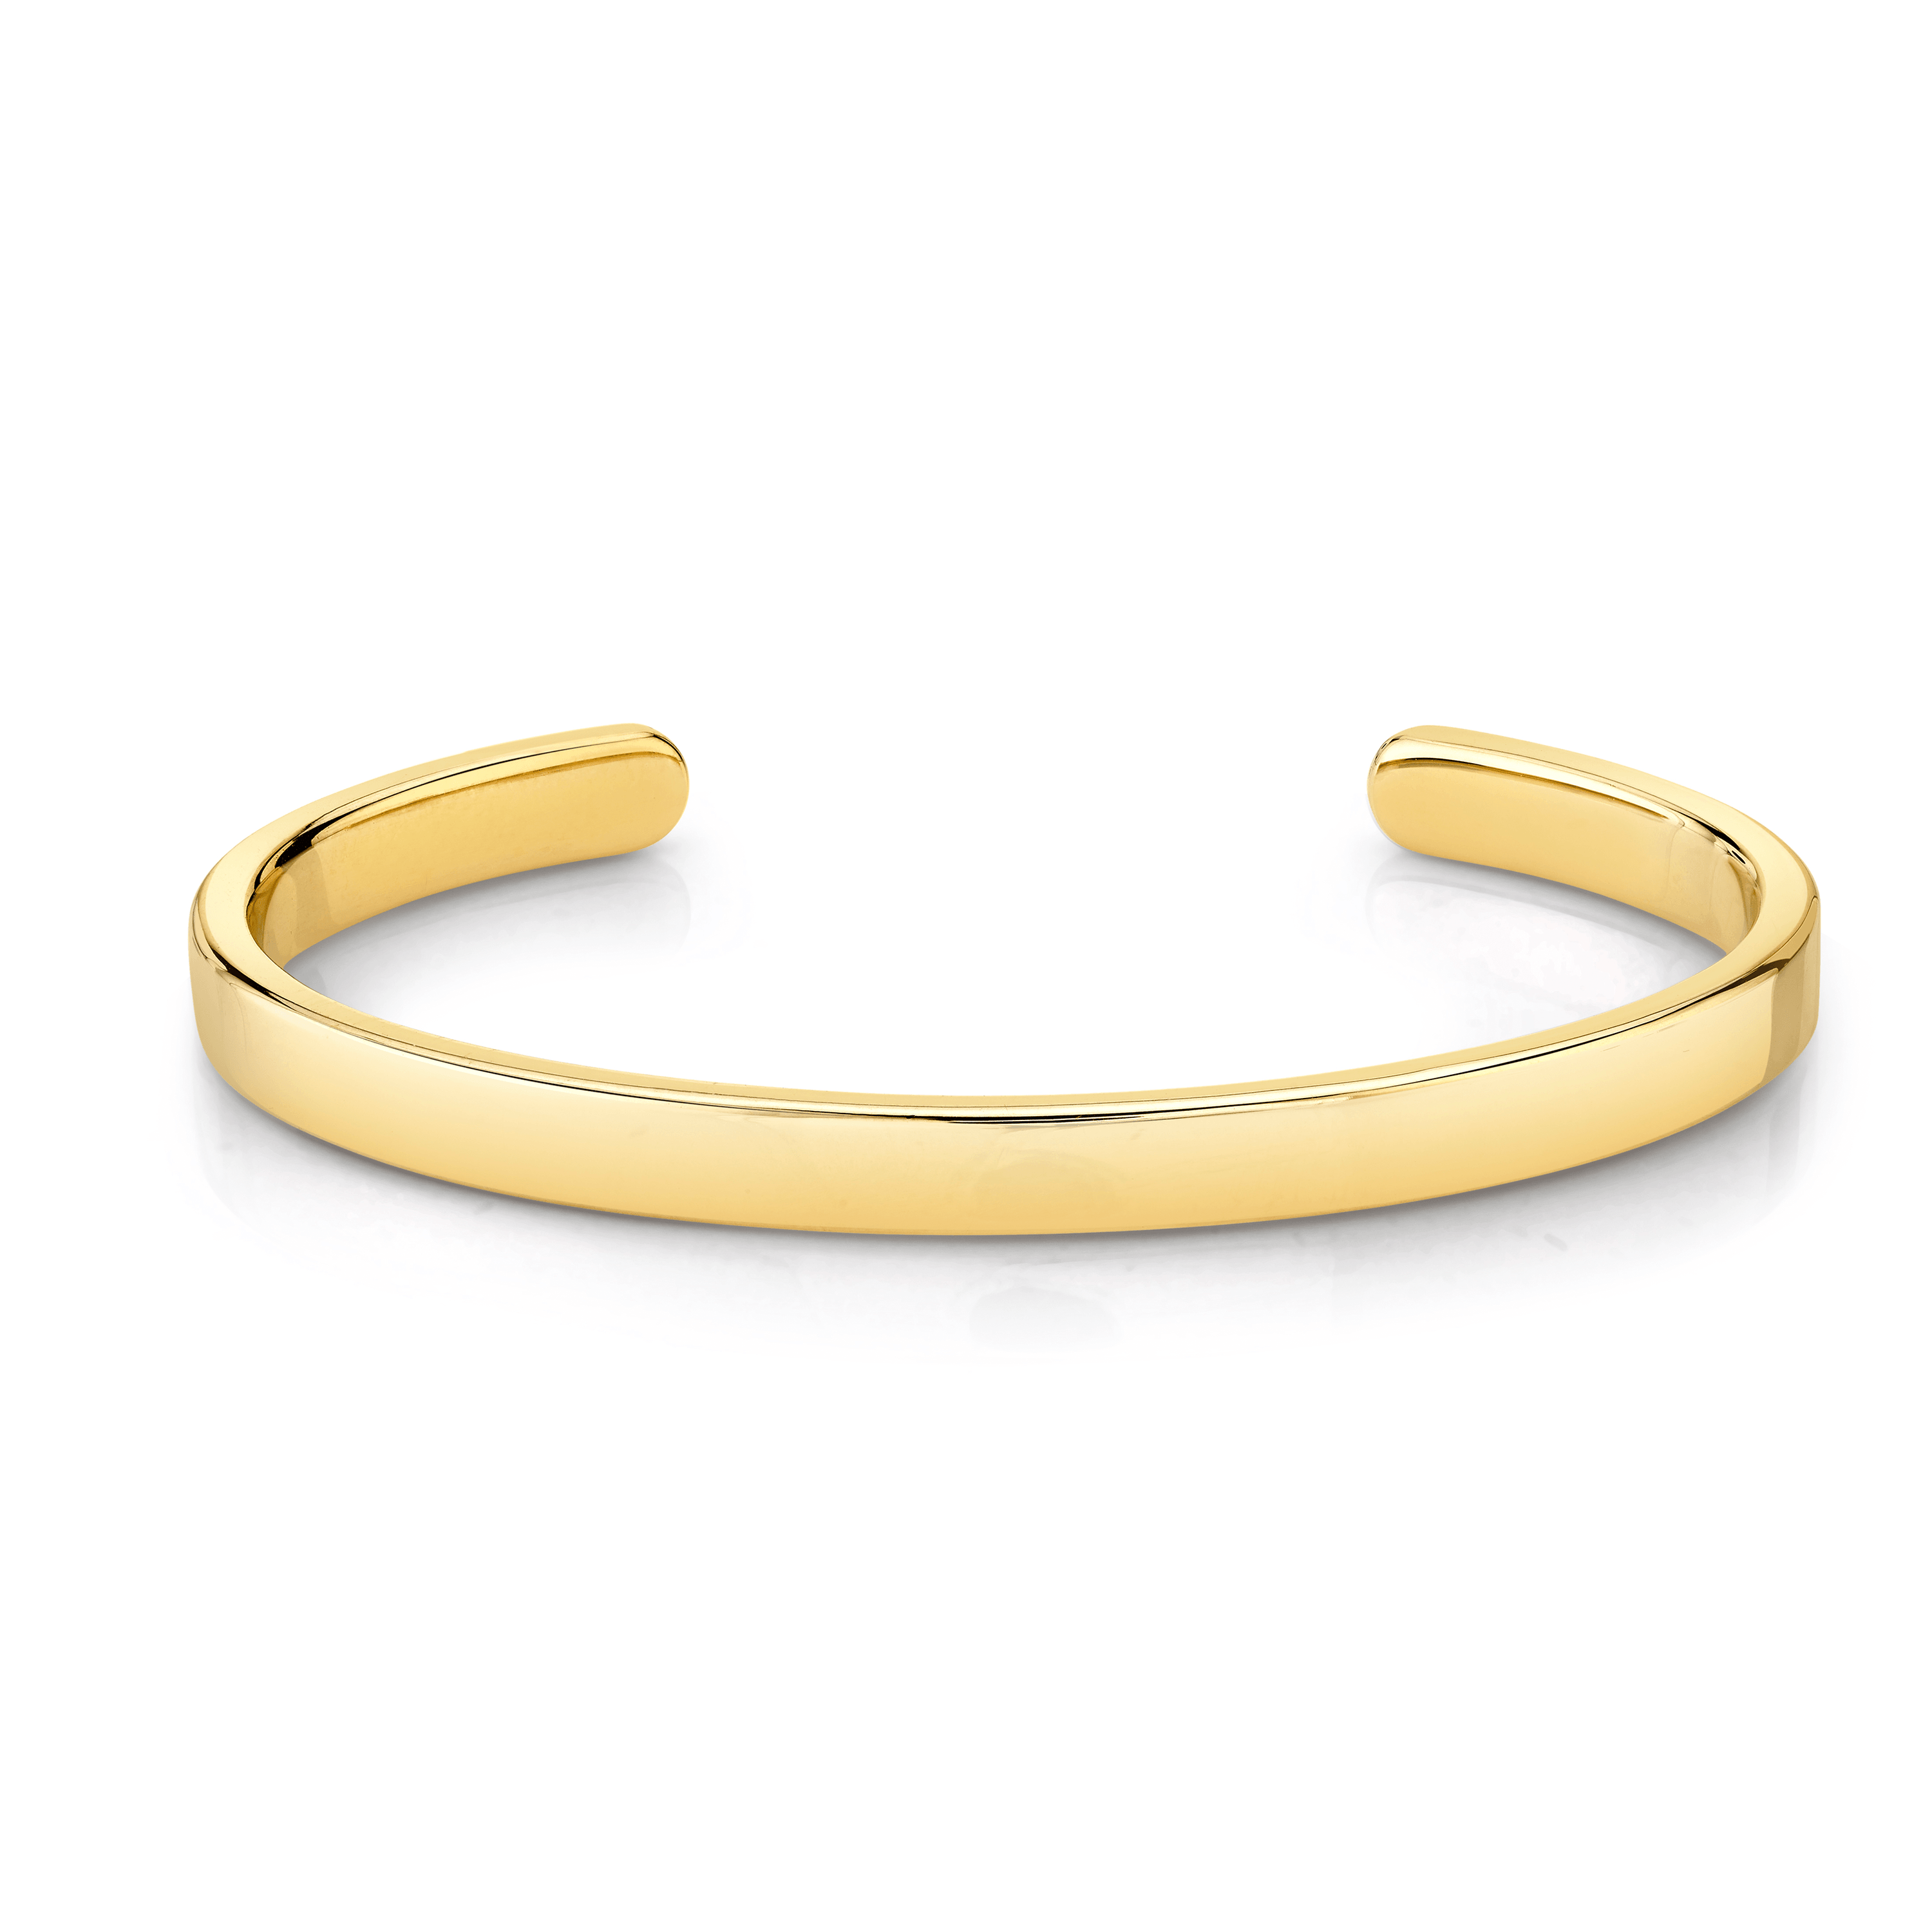 Marrow Fine Jewelry Gold Cuff Bracelet